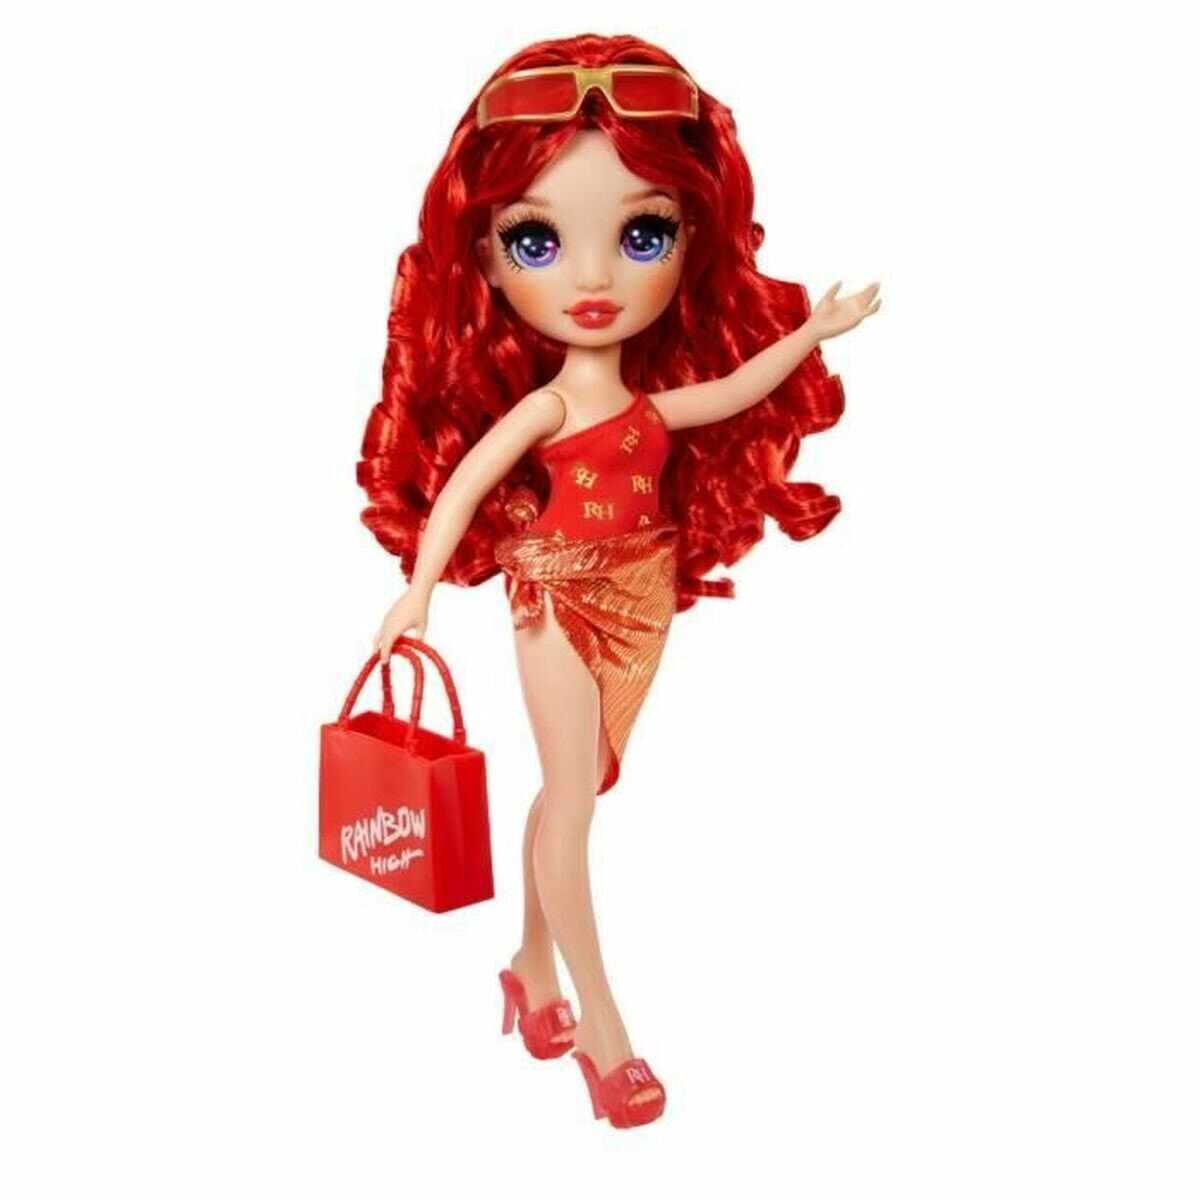 Rainbow High Swim & Style Fashion Doll- Ruby (Red) 507277EUC